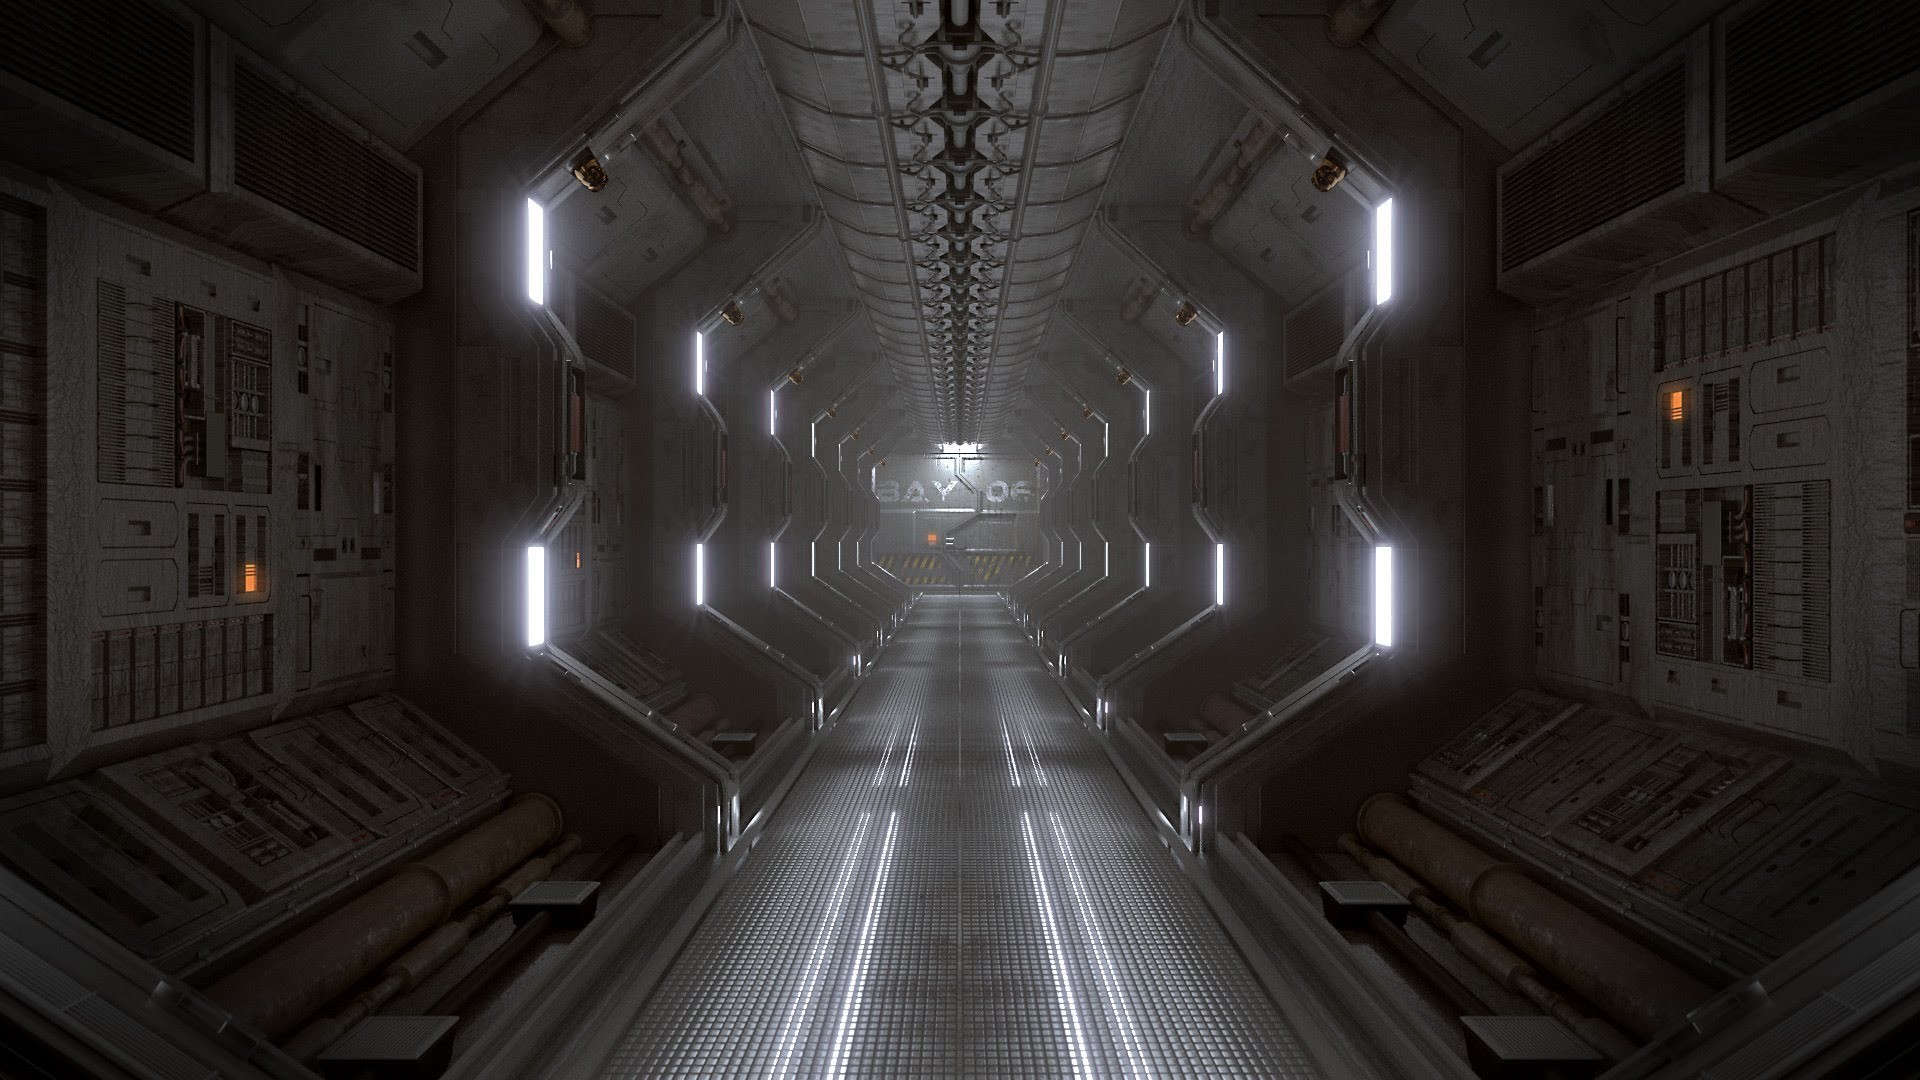 1920x1080 Blender Tutorial: Create a Spaceship Corridor in Blender - Part 2 of 2 -  YouTube